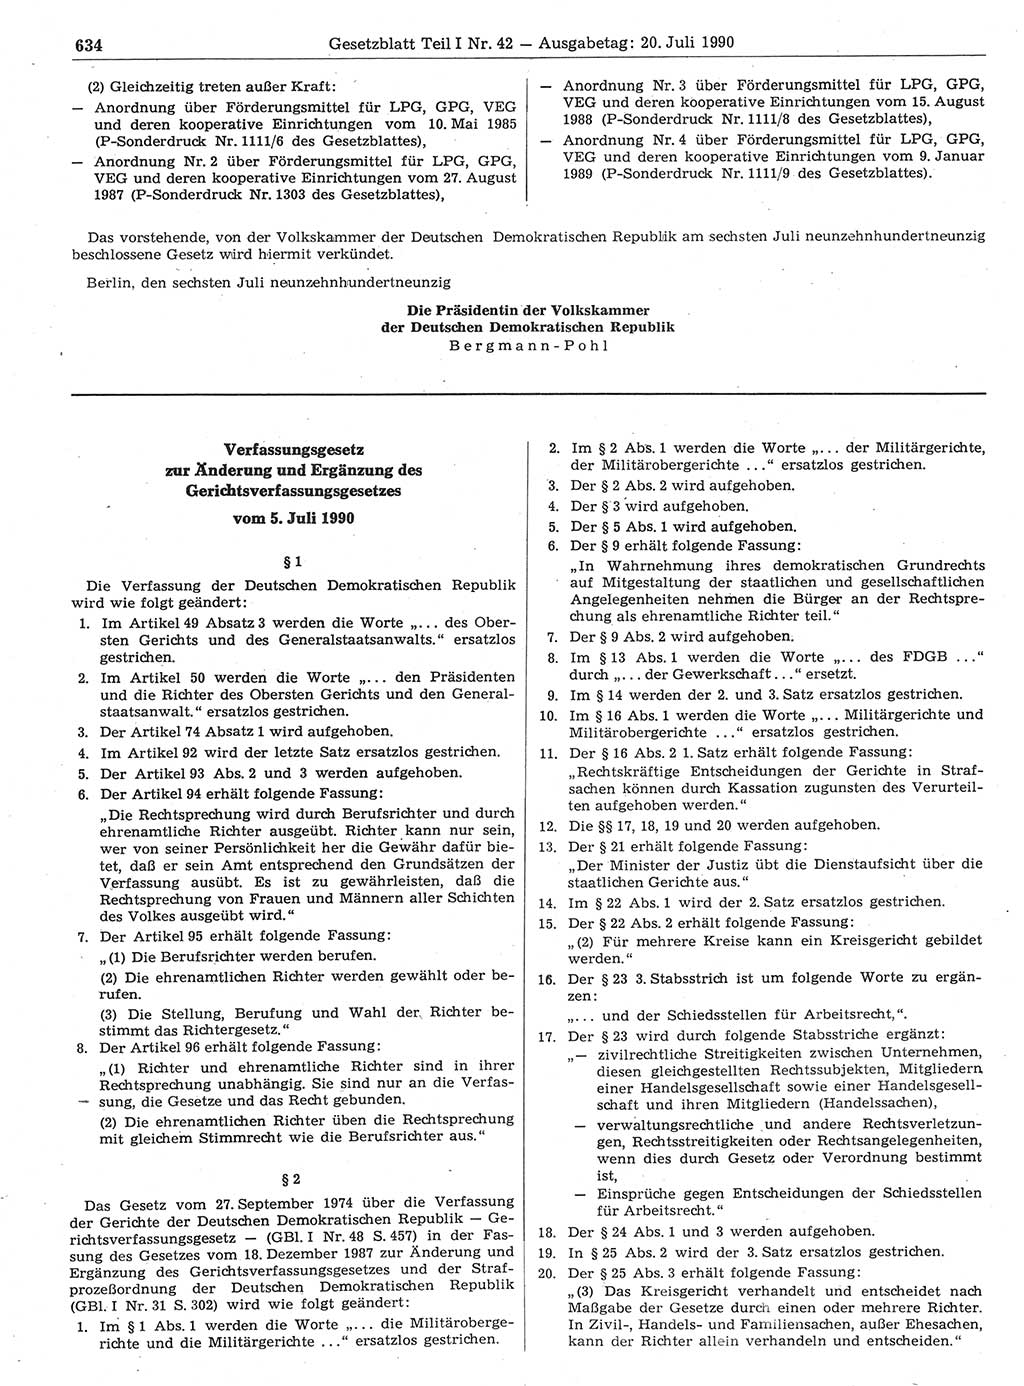 Gesetzblatt (GBl.) der Deutschen Demokratischen Republik (DDR) Teil Ⅰ 1990, Seite 634 (GBl. DDR Ⅰ 1990, S. 634)